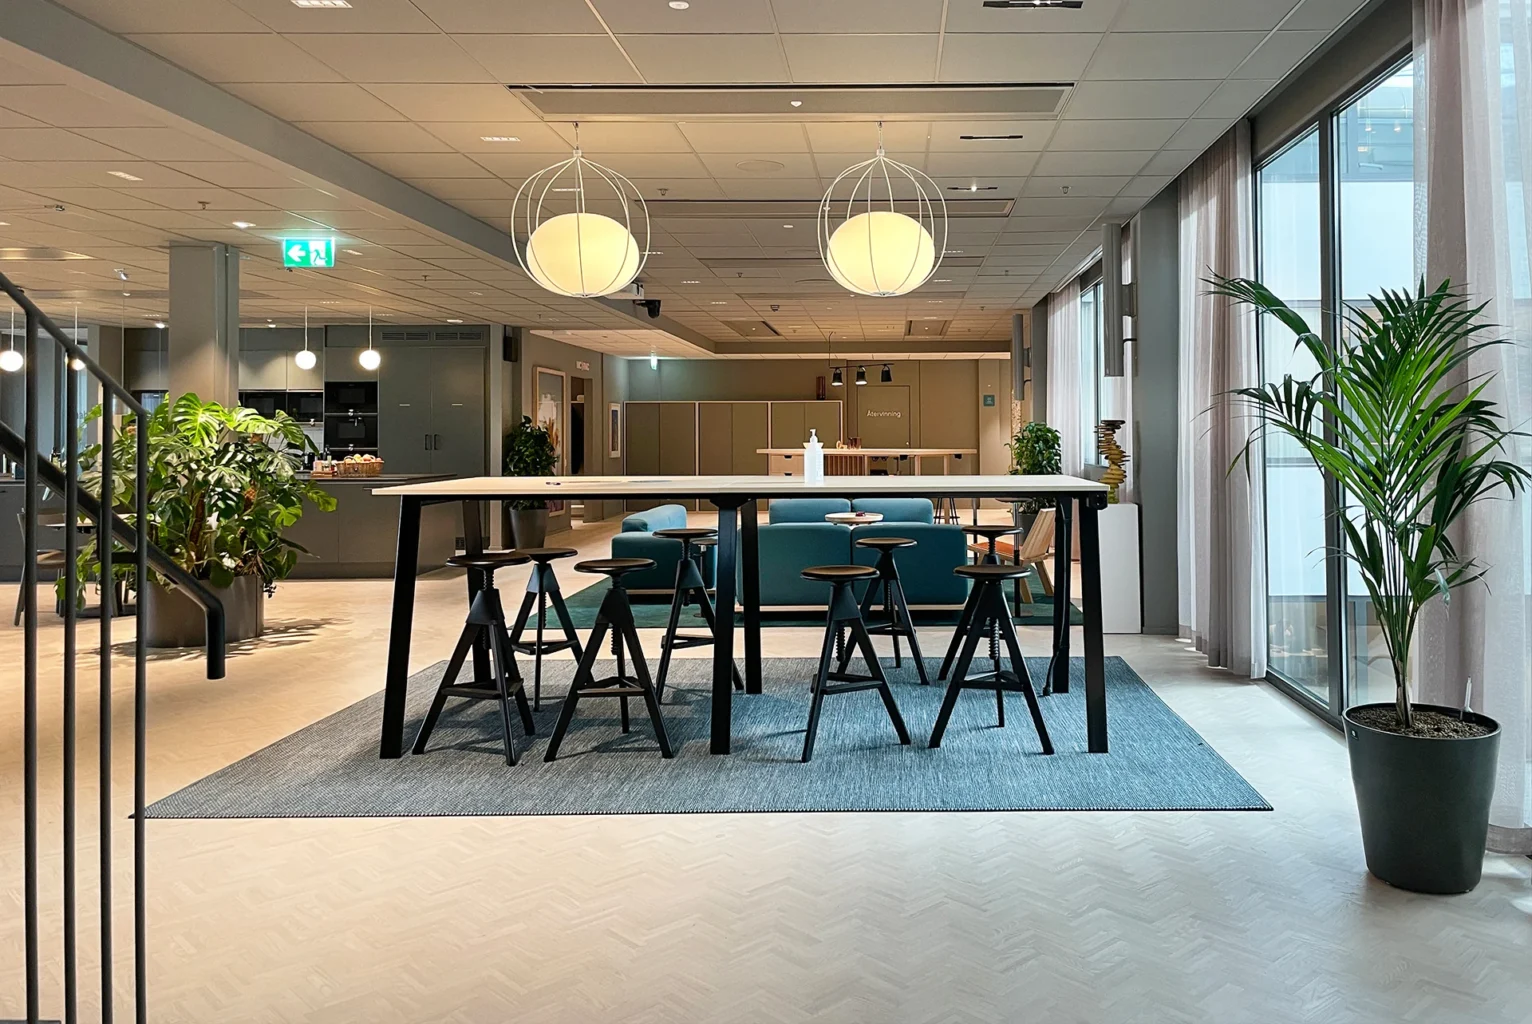 Fabege head office, Stockholm, vertikala växtvägg inomhus och växtinredning